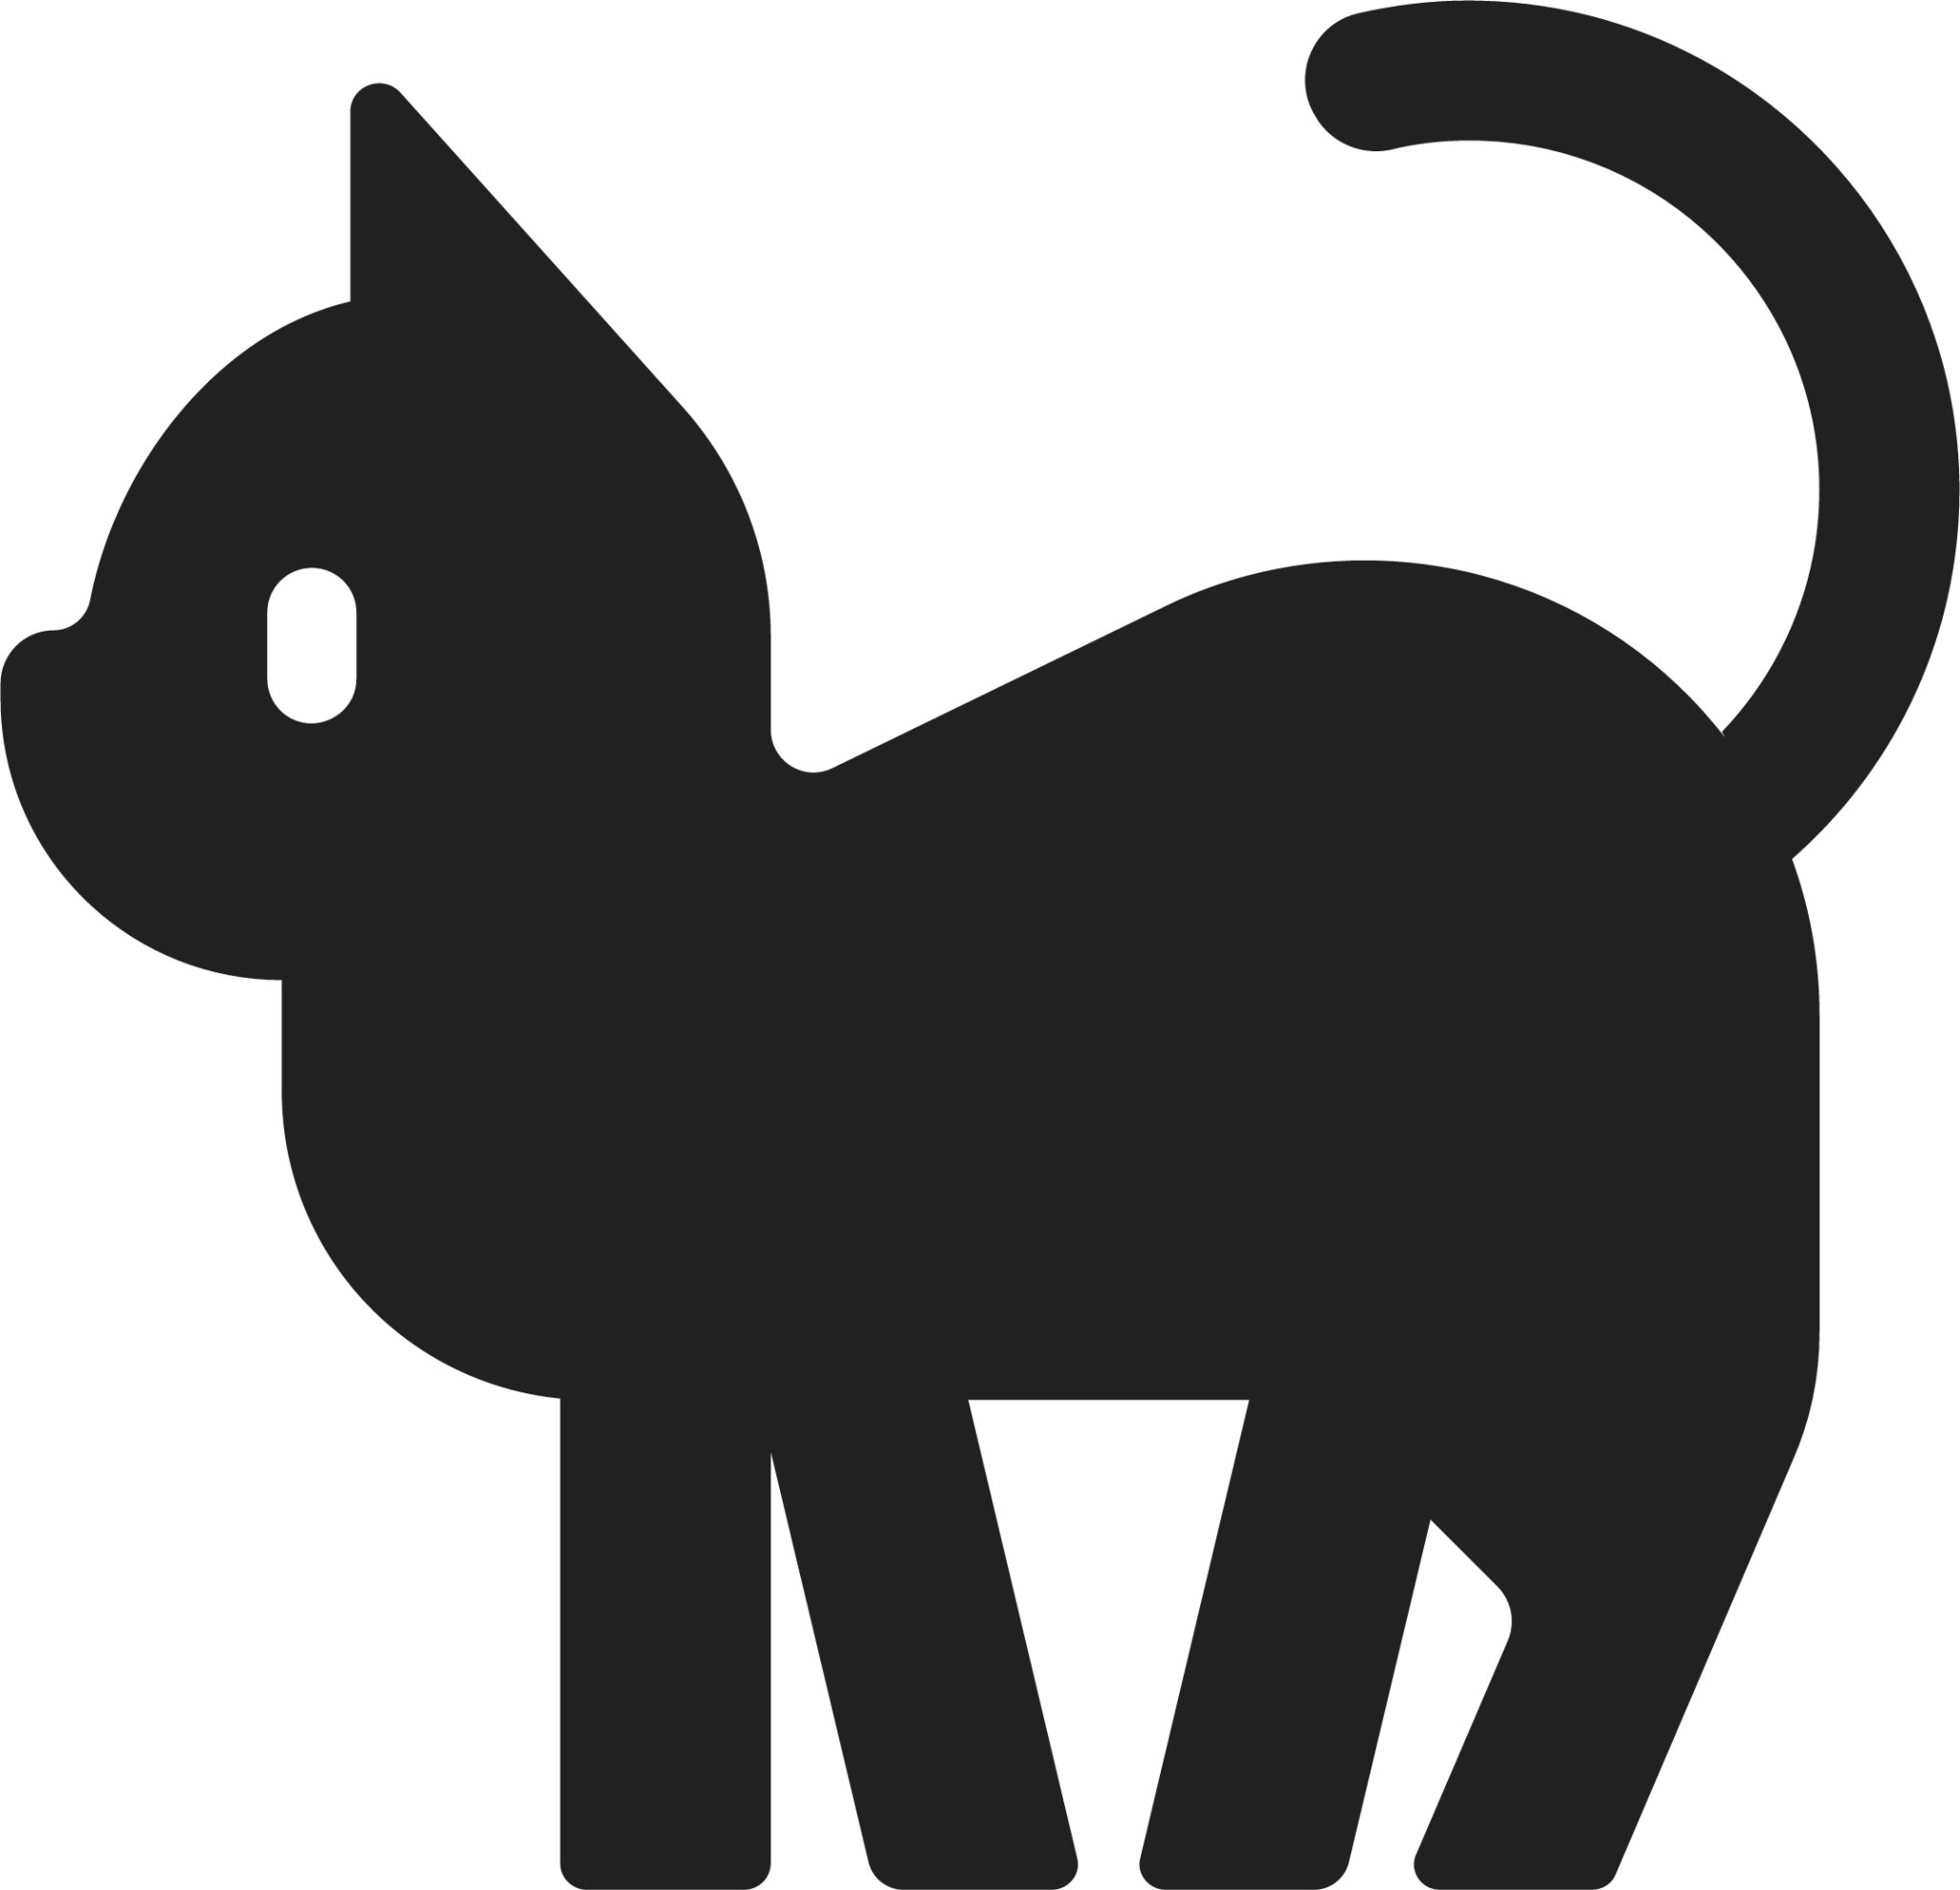 ΛƧMЯ DЯΣƧƧIПG YӨЦ ΛƧ ӨӨMPΛ ᄂӨӨMPΛ ƬӨ ƧᄃΛM ᄃΉIᄂDЯΣП —Bachi. Black-cat-emoji-2048x1975-b6ysmcwj